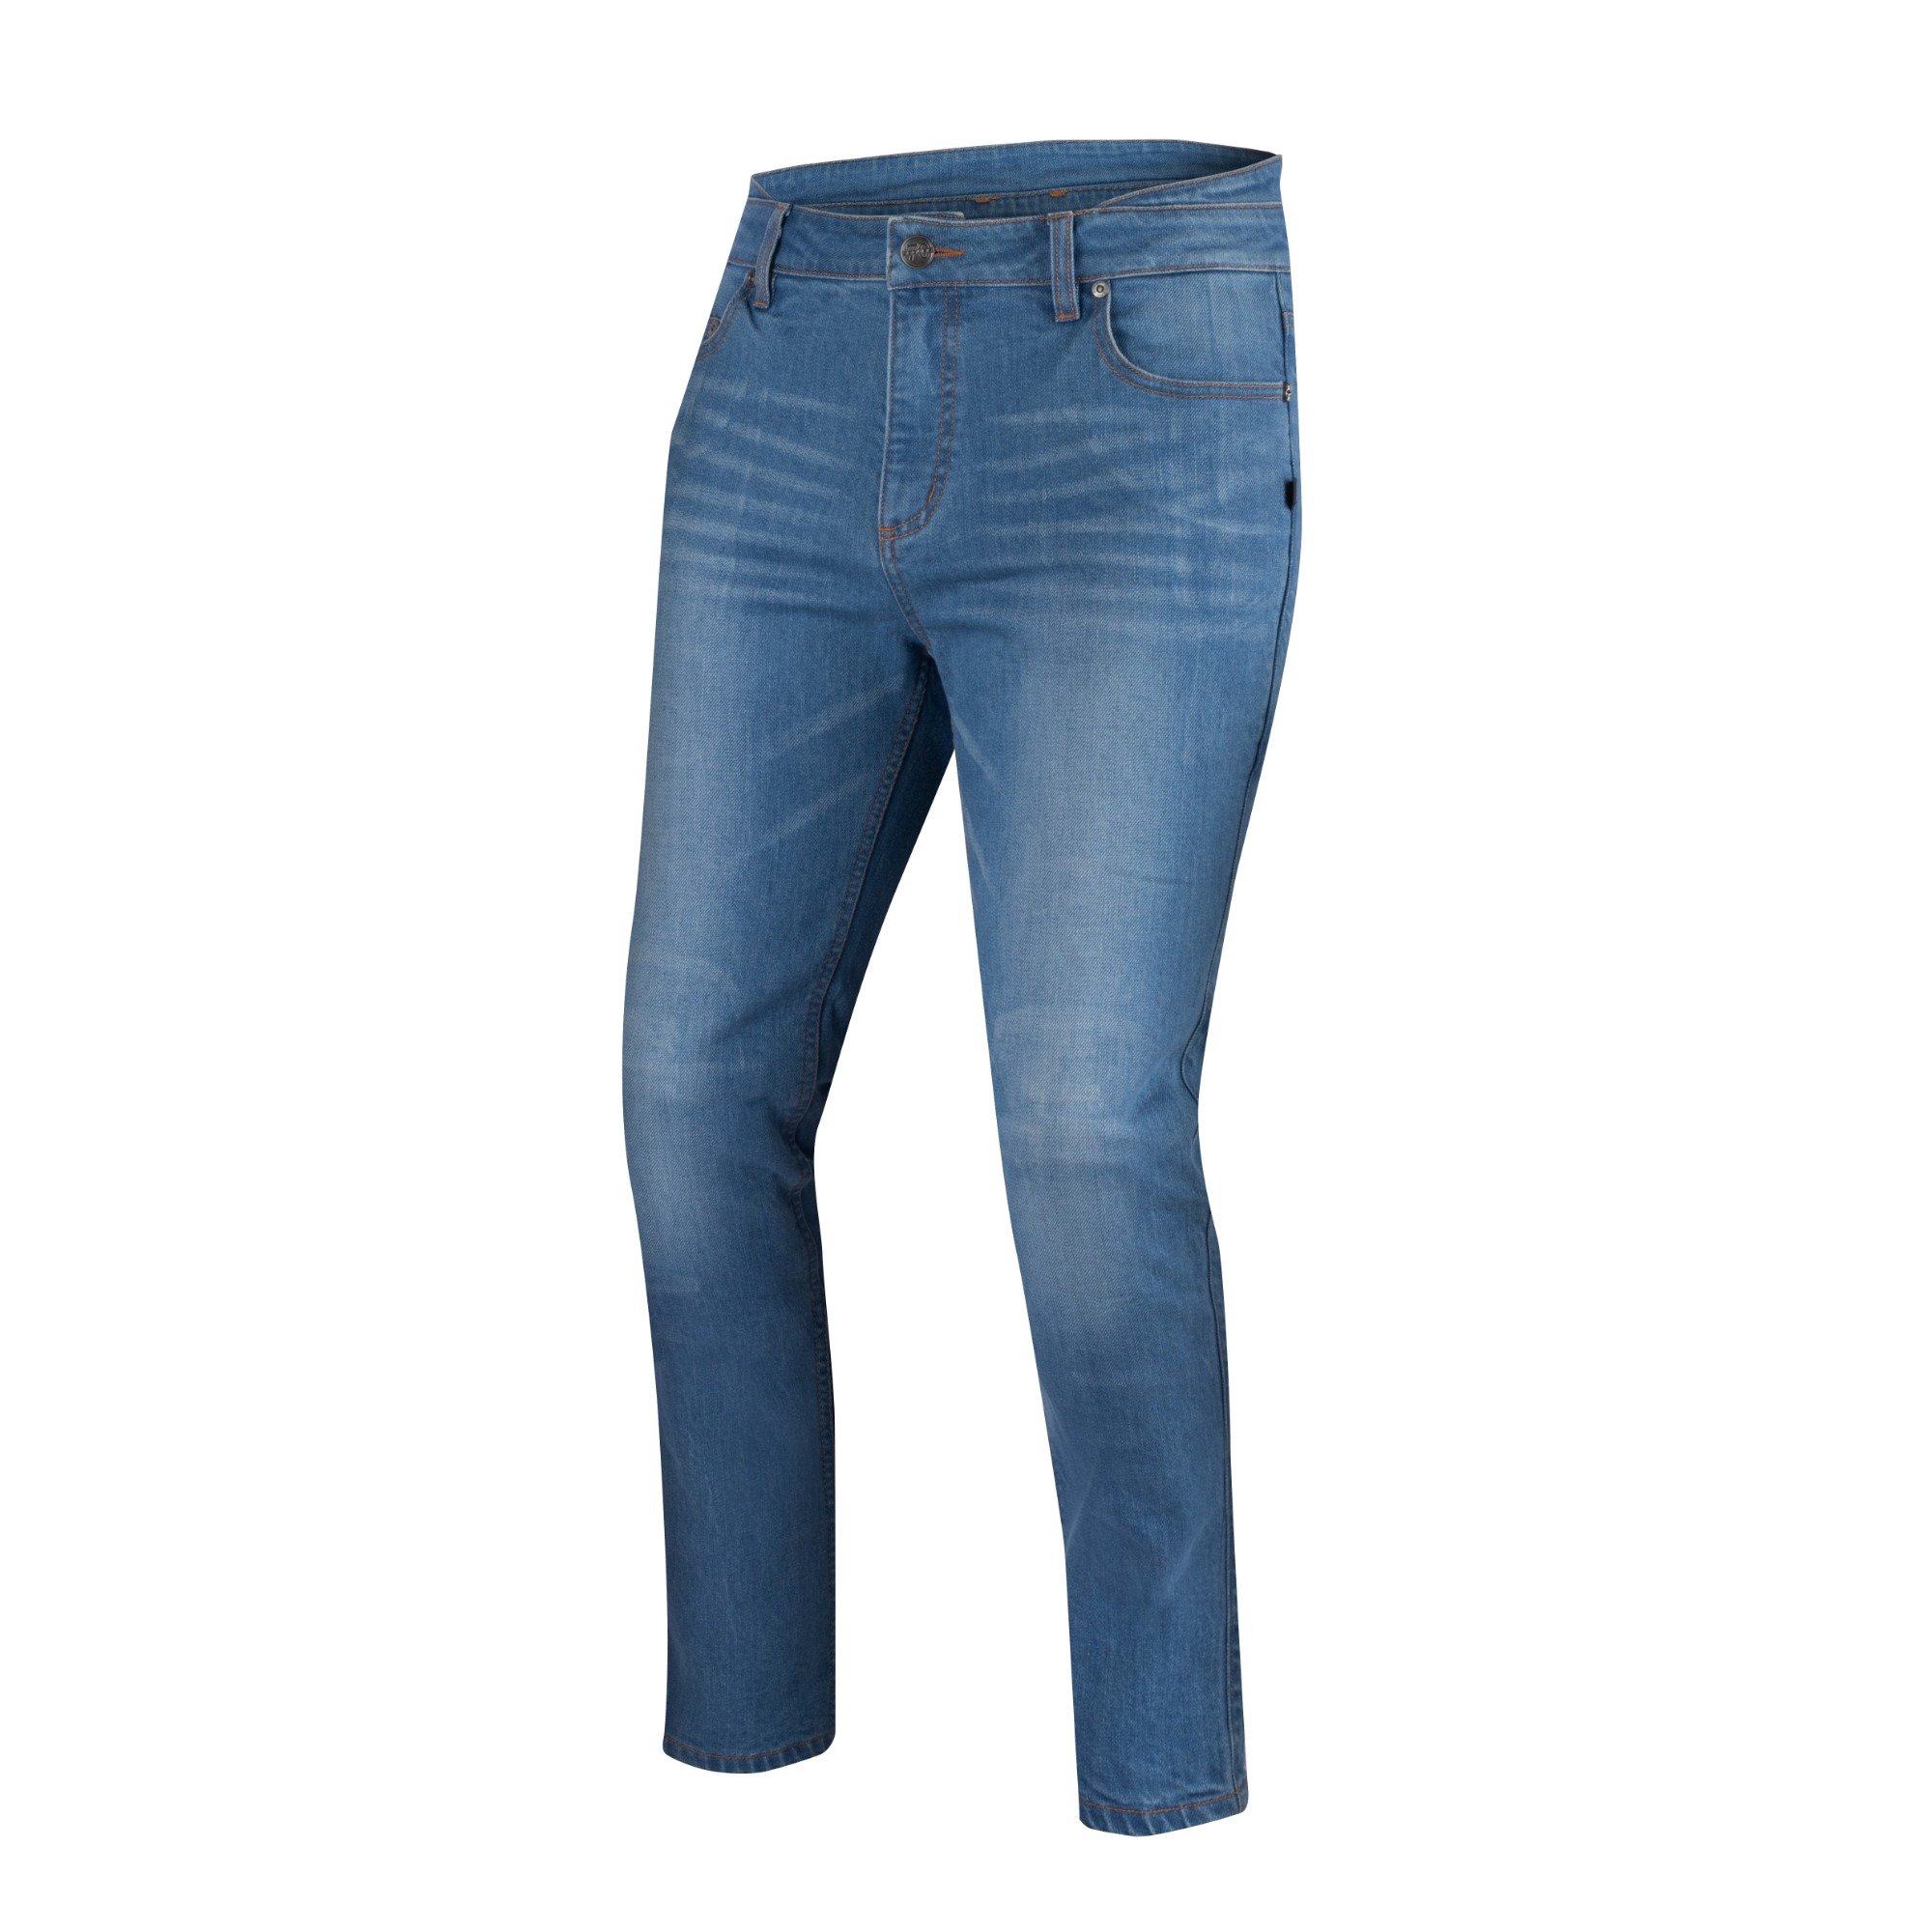 Image of Segura Trousers Rosco Blue Talla 2XL